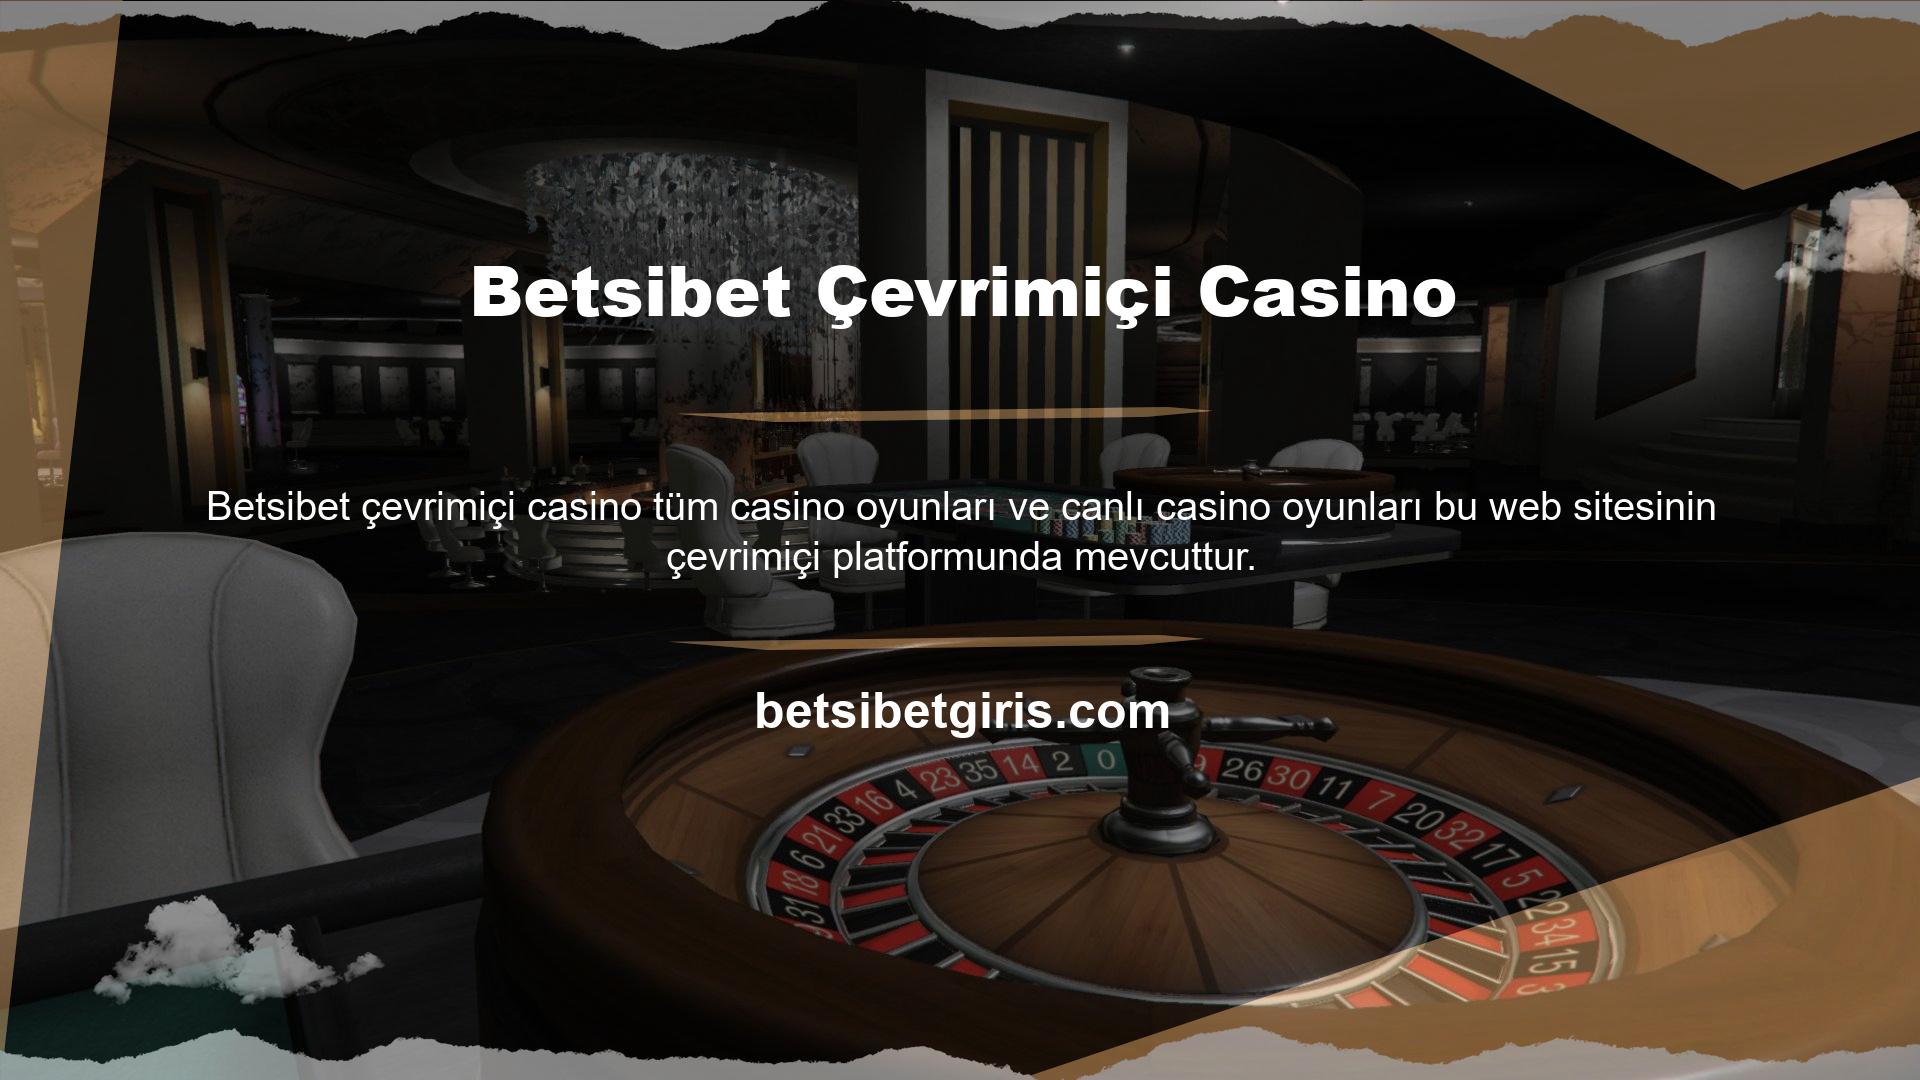 Casinomuz en geniş slot makinesi seçeneklerine sahiptir